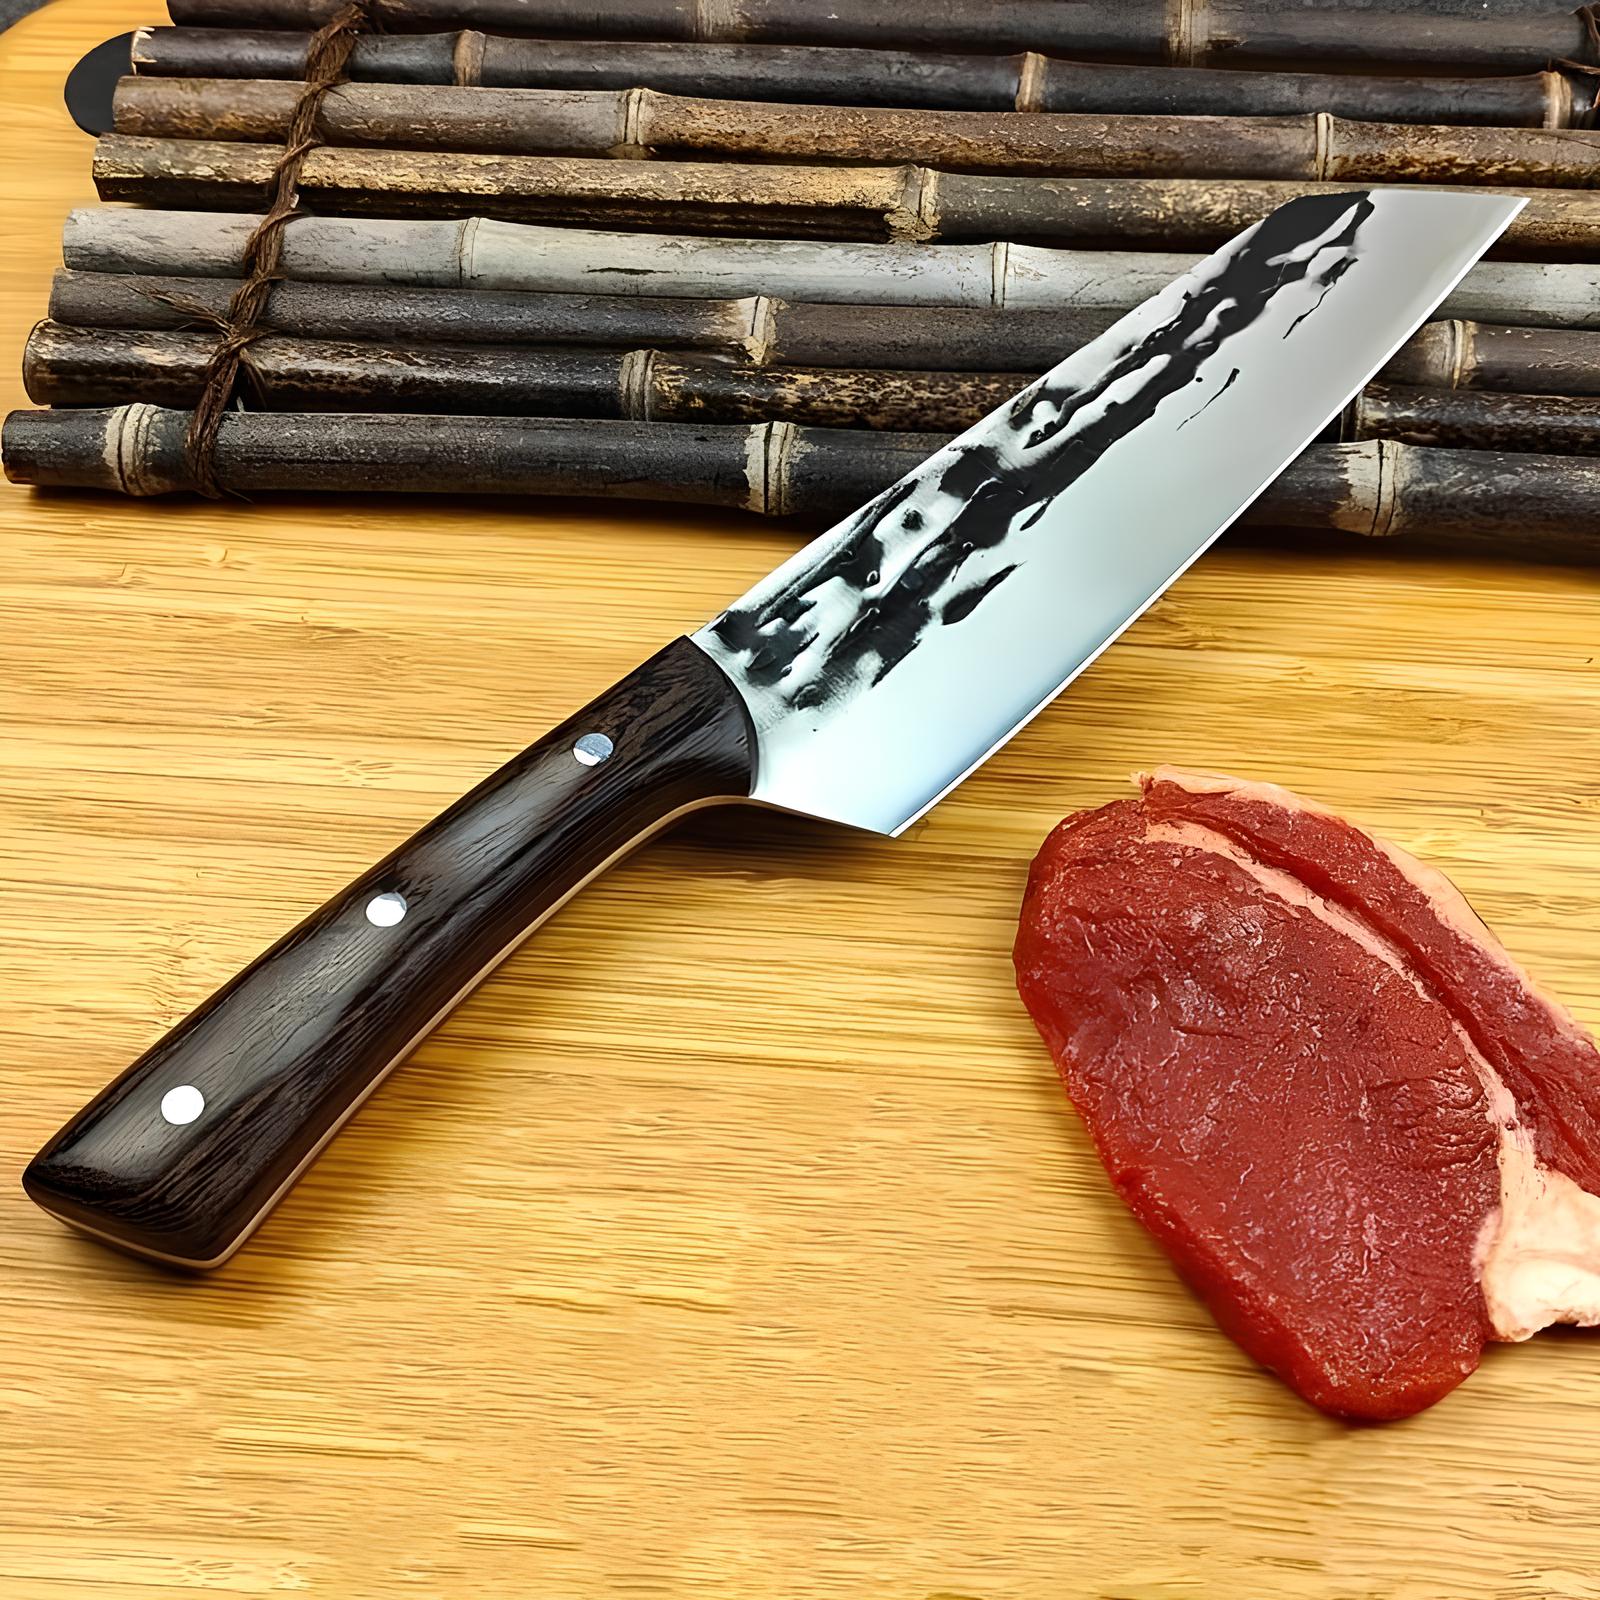 Couteau chef japonais forgé - Tora - UstensilesCulinaires